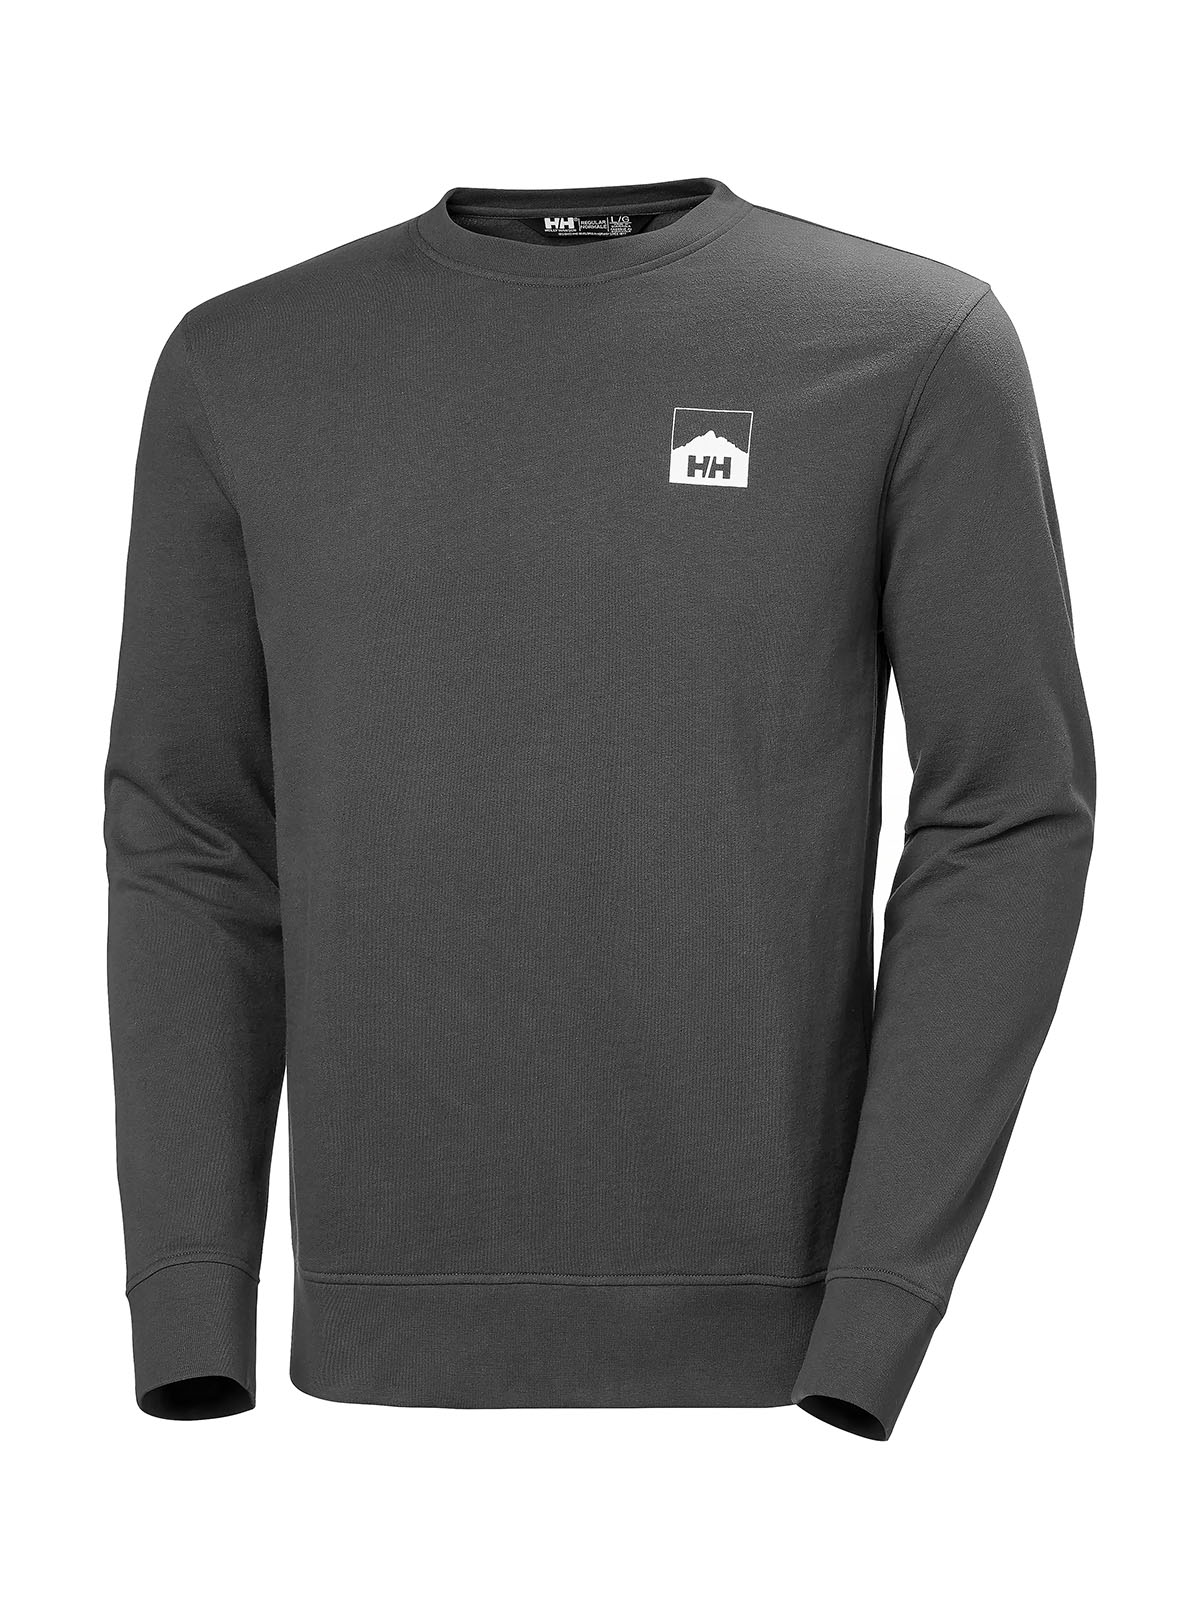 Nord Graphic Crew Sweatshirt for Men